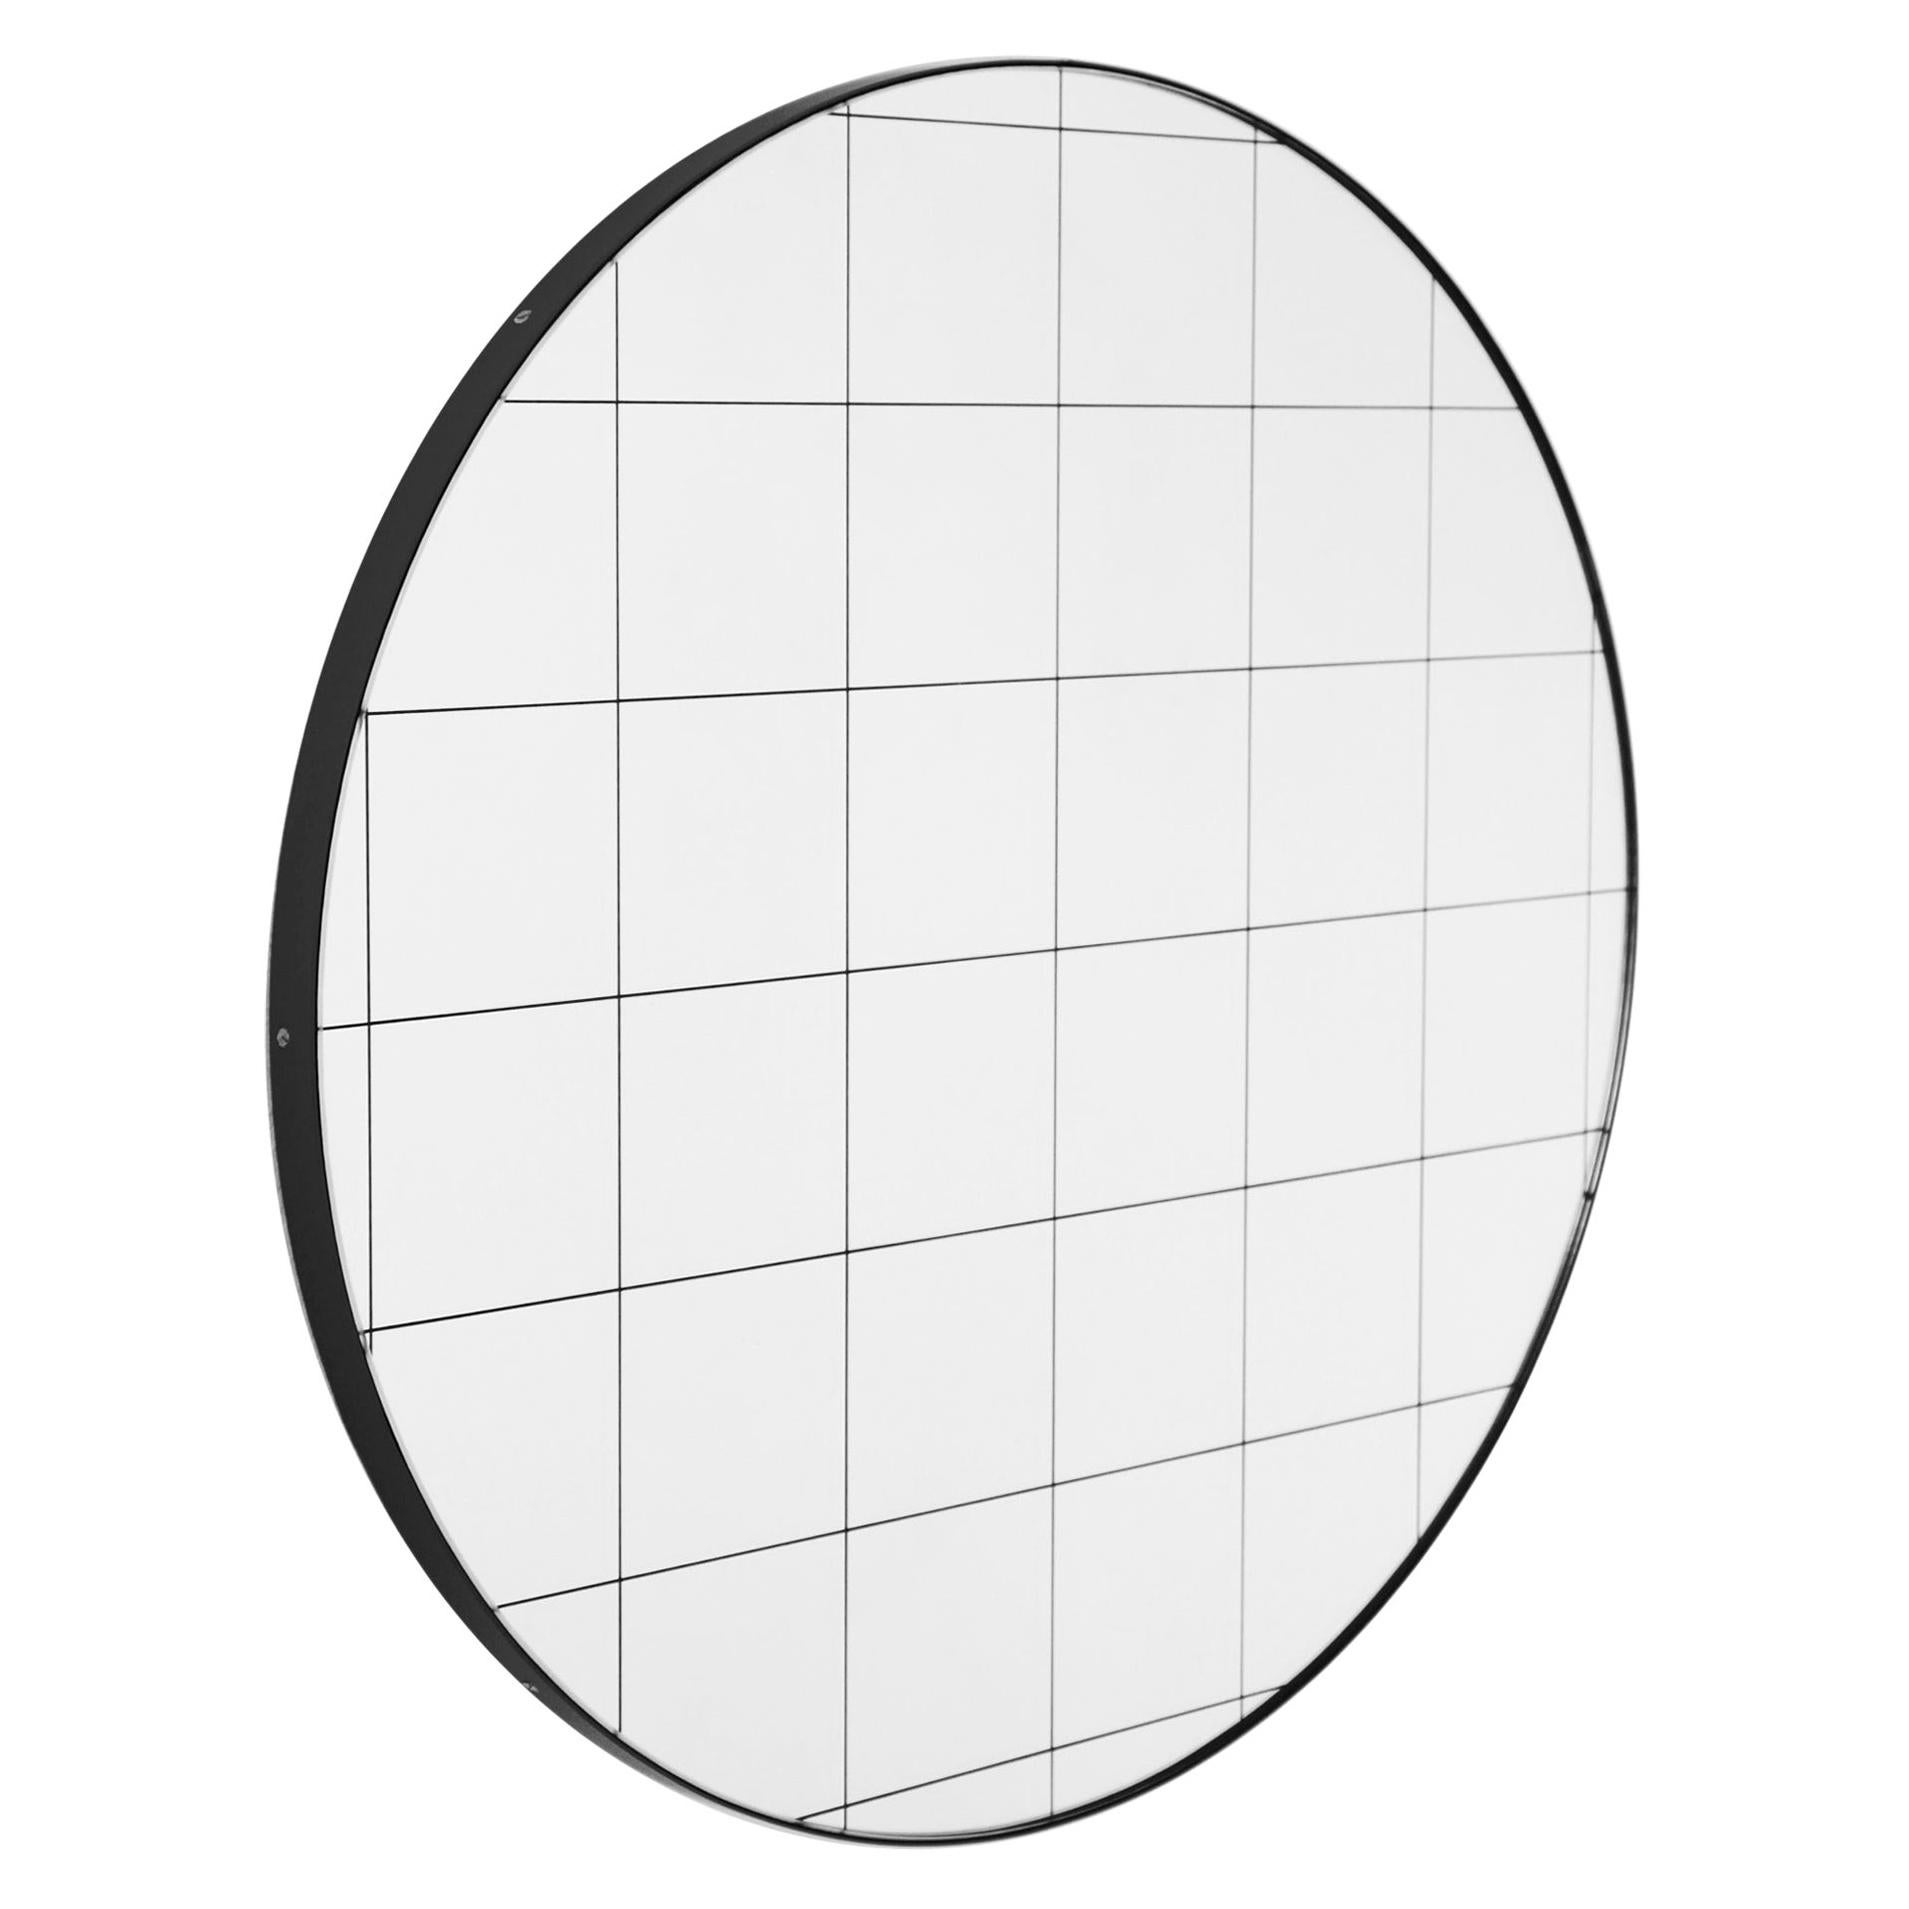 Orbis Black Grid Sandblasted Round Modern Mirror with Black Frame, Medium